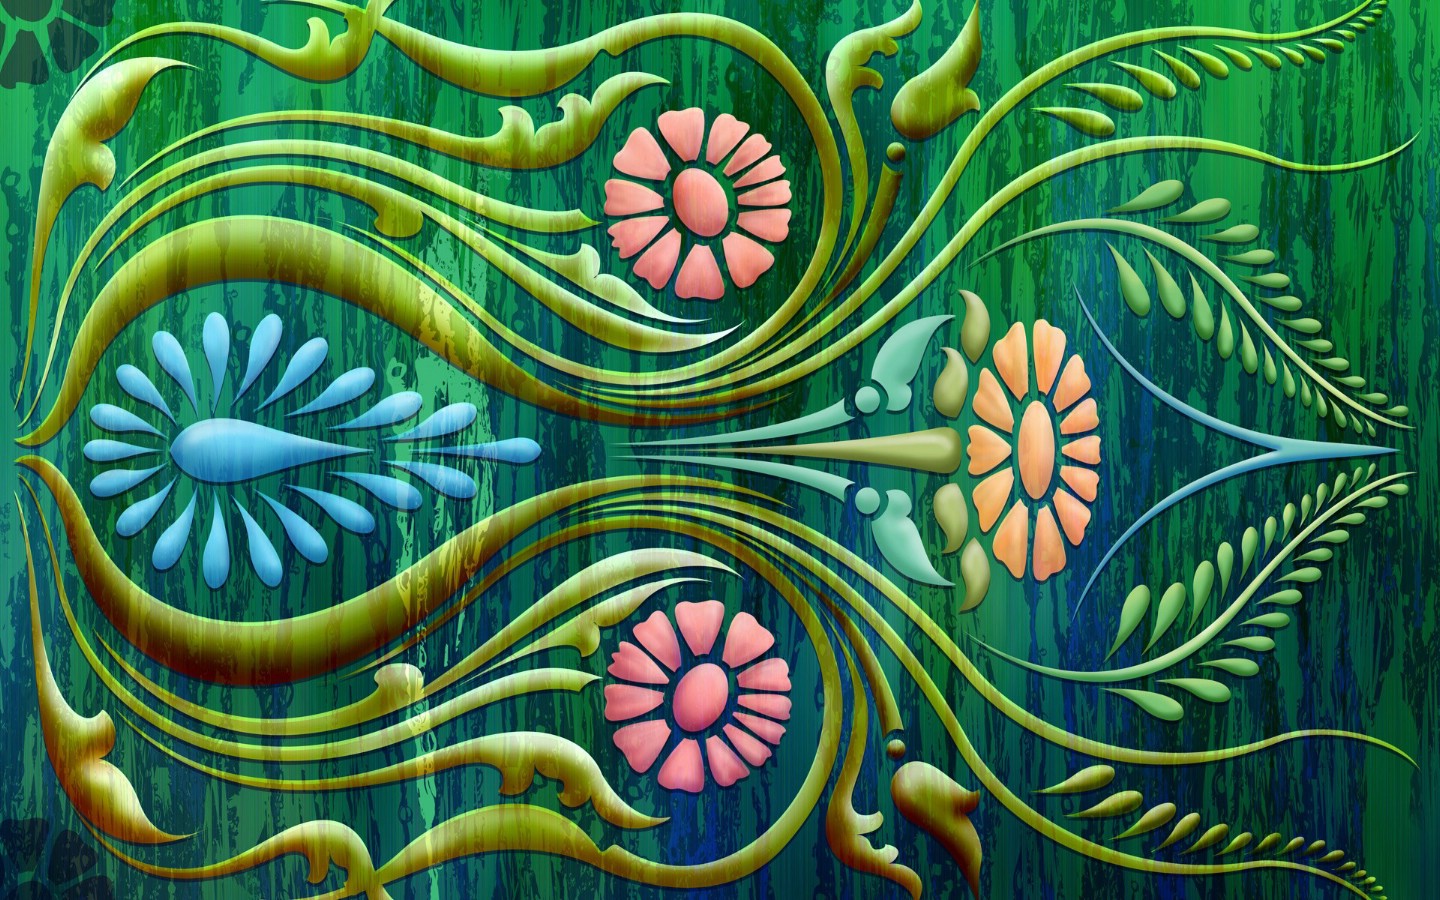 壁纸1440x900 抽象花卉图案设计壁纸 电脑花卉绘画壁纸 电脑花卉绘画图片 电脑花卉绘画素材 花卉壁纸 花卉图库 花卉图片素材桌面壁纸